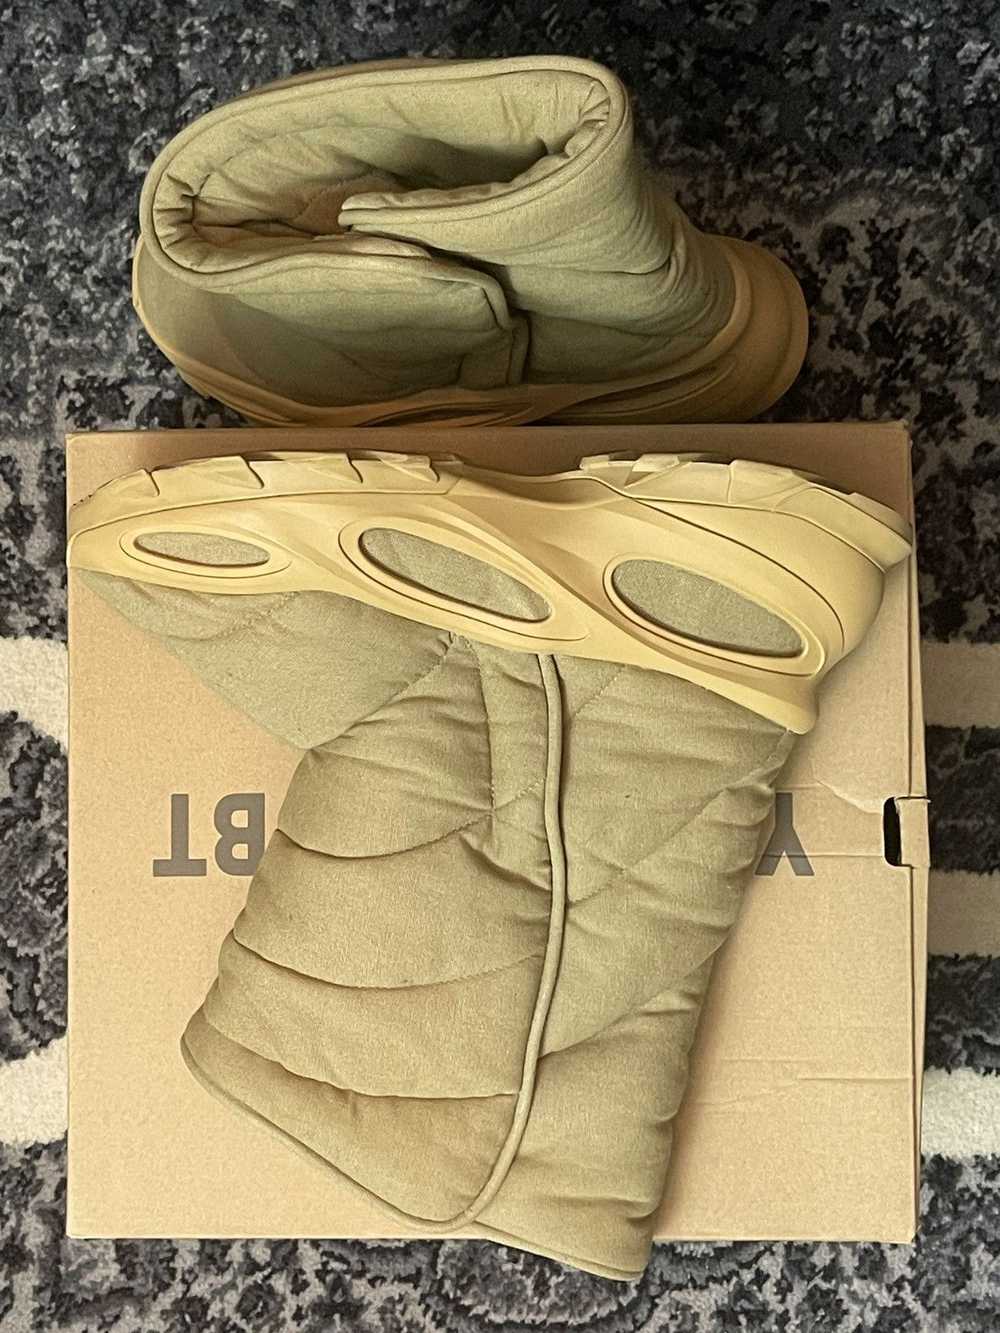 Yeezy Season Adidas Yeezy NSLTD Boot Size 11 - image 4